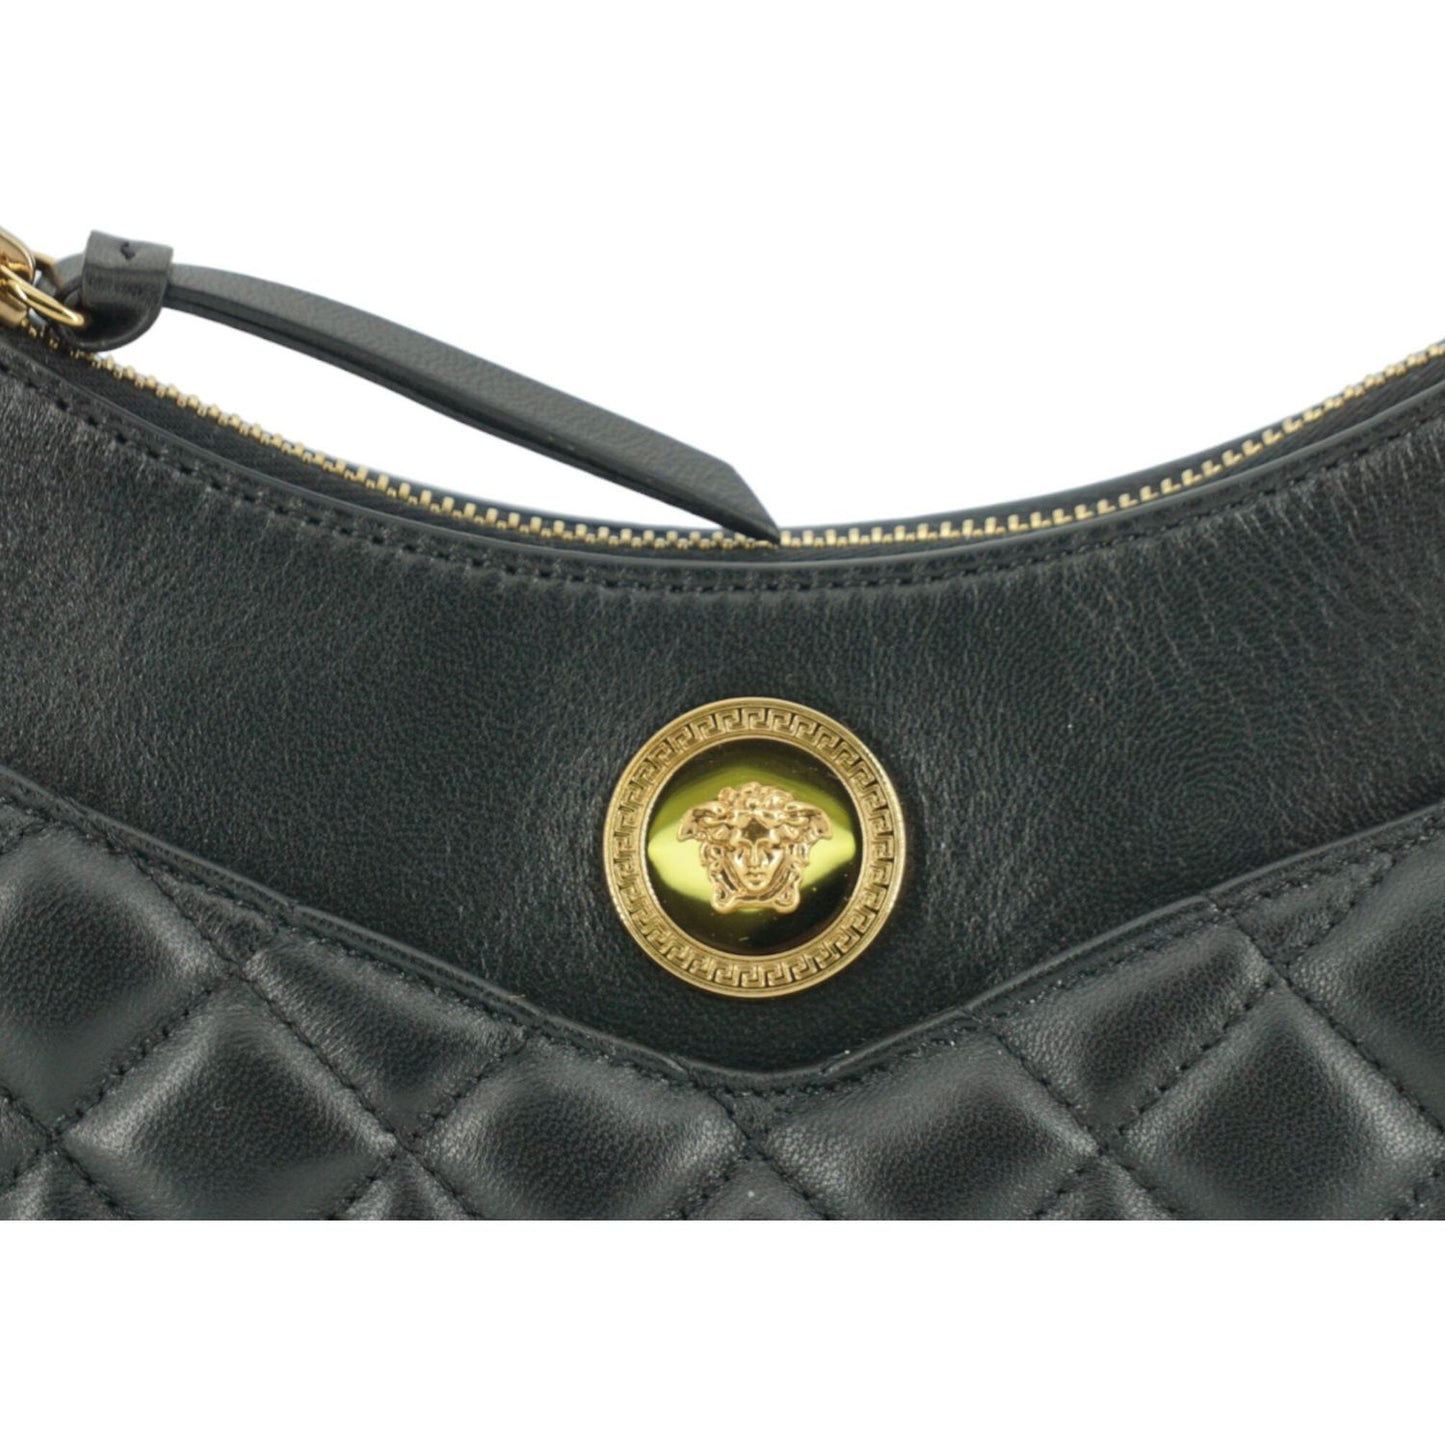 Versace Elegant Half Moon Leather Shoulder Bag black-leather-half-moon-shoulder-bag